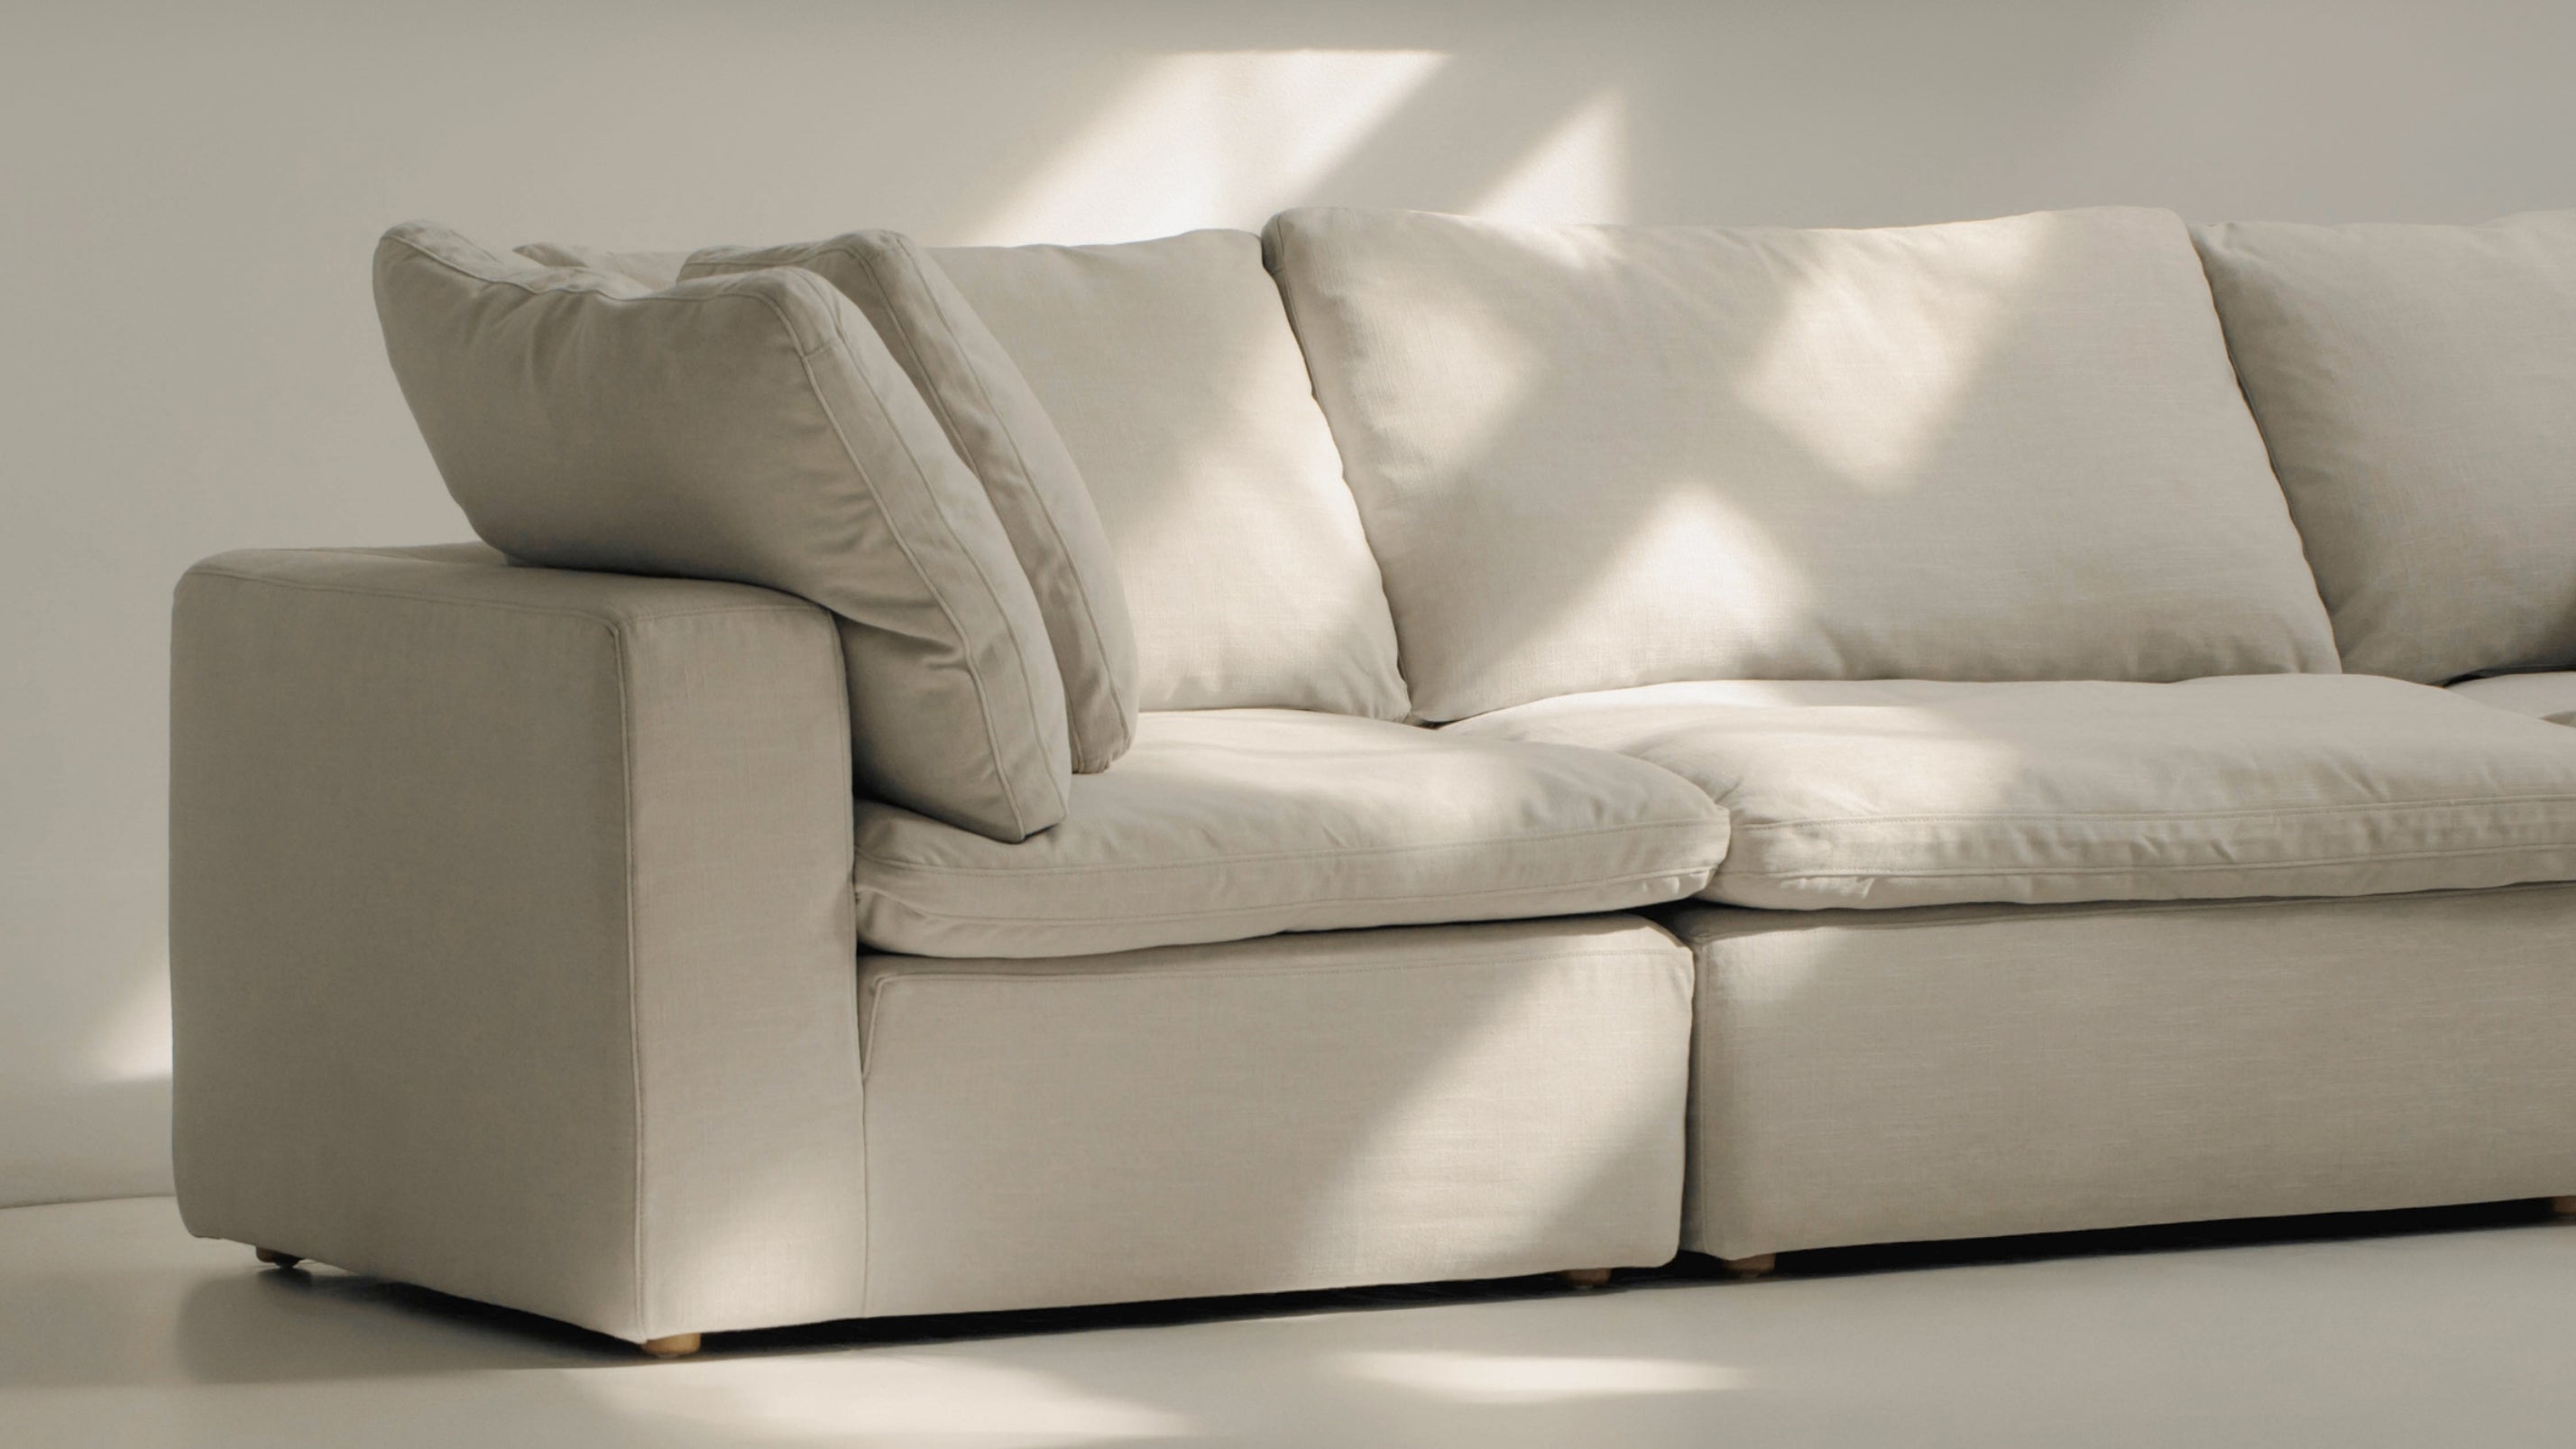 Movie Night™ 3-Piece Modular Sofa, Large, Clay - Image 4